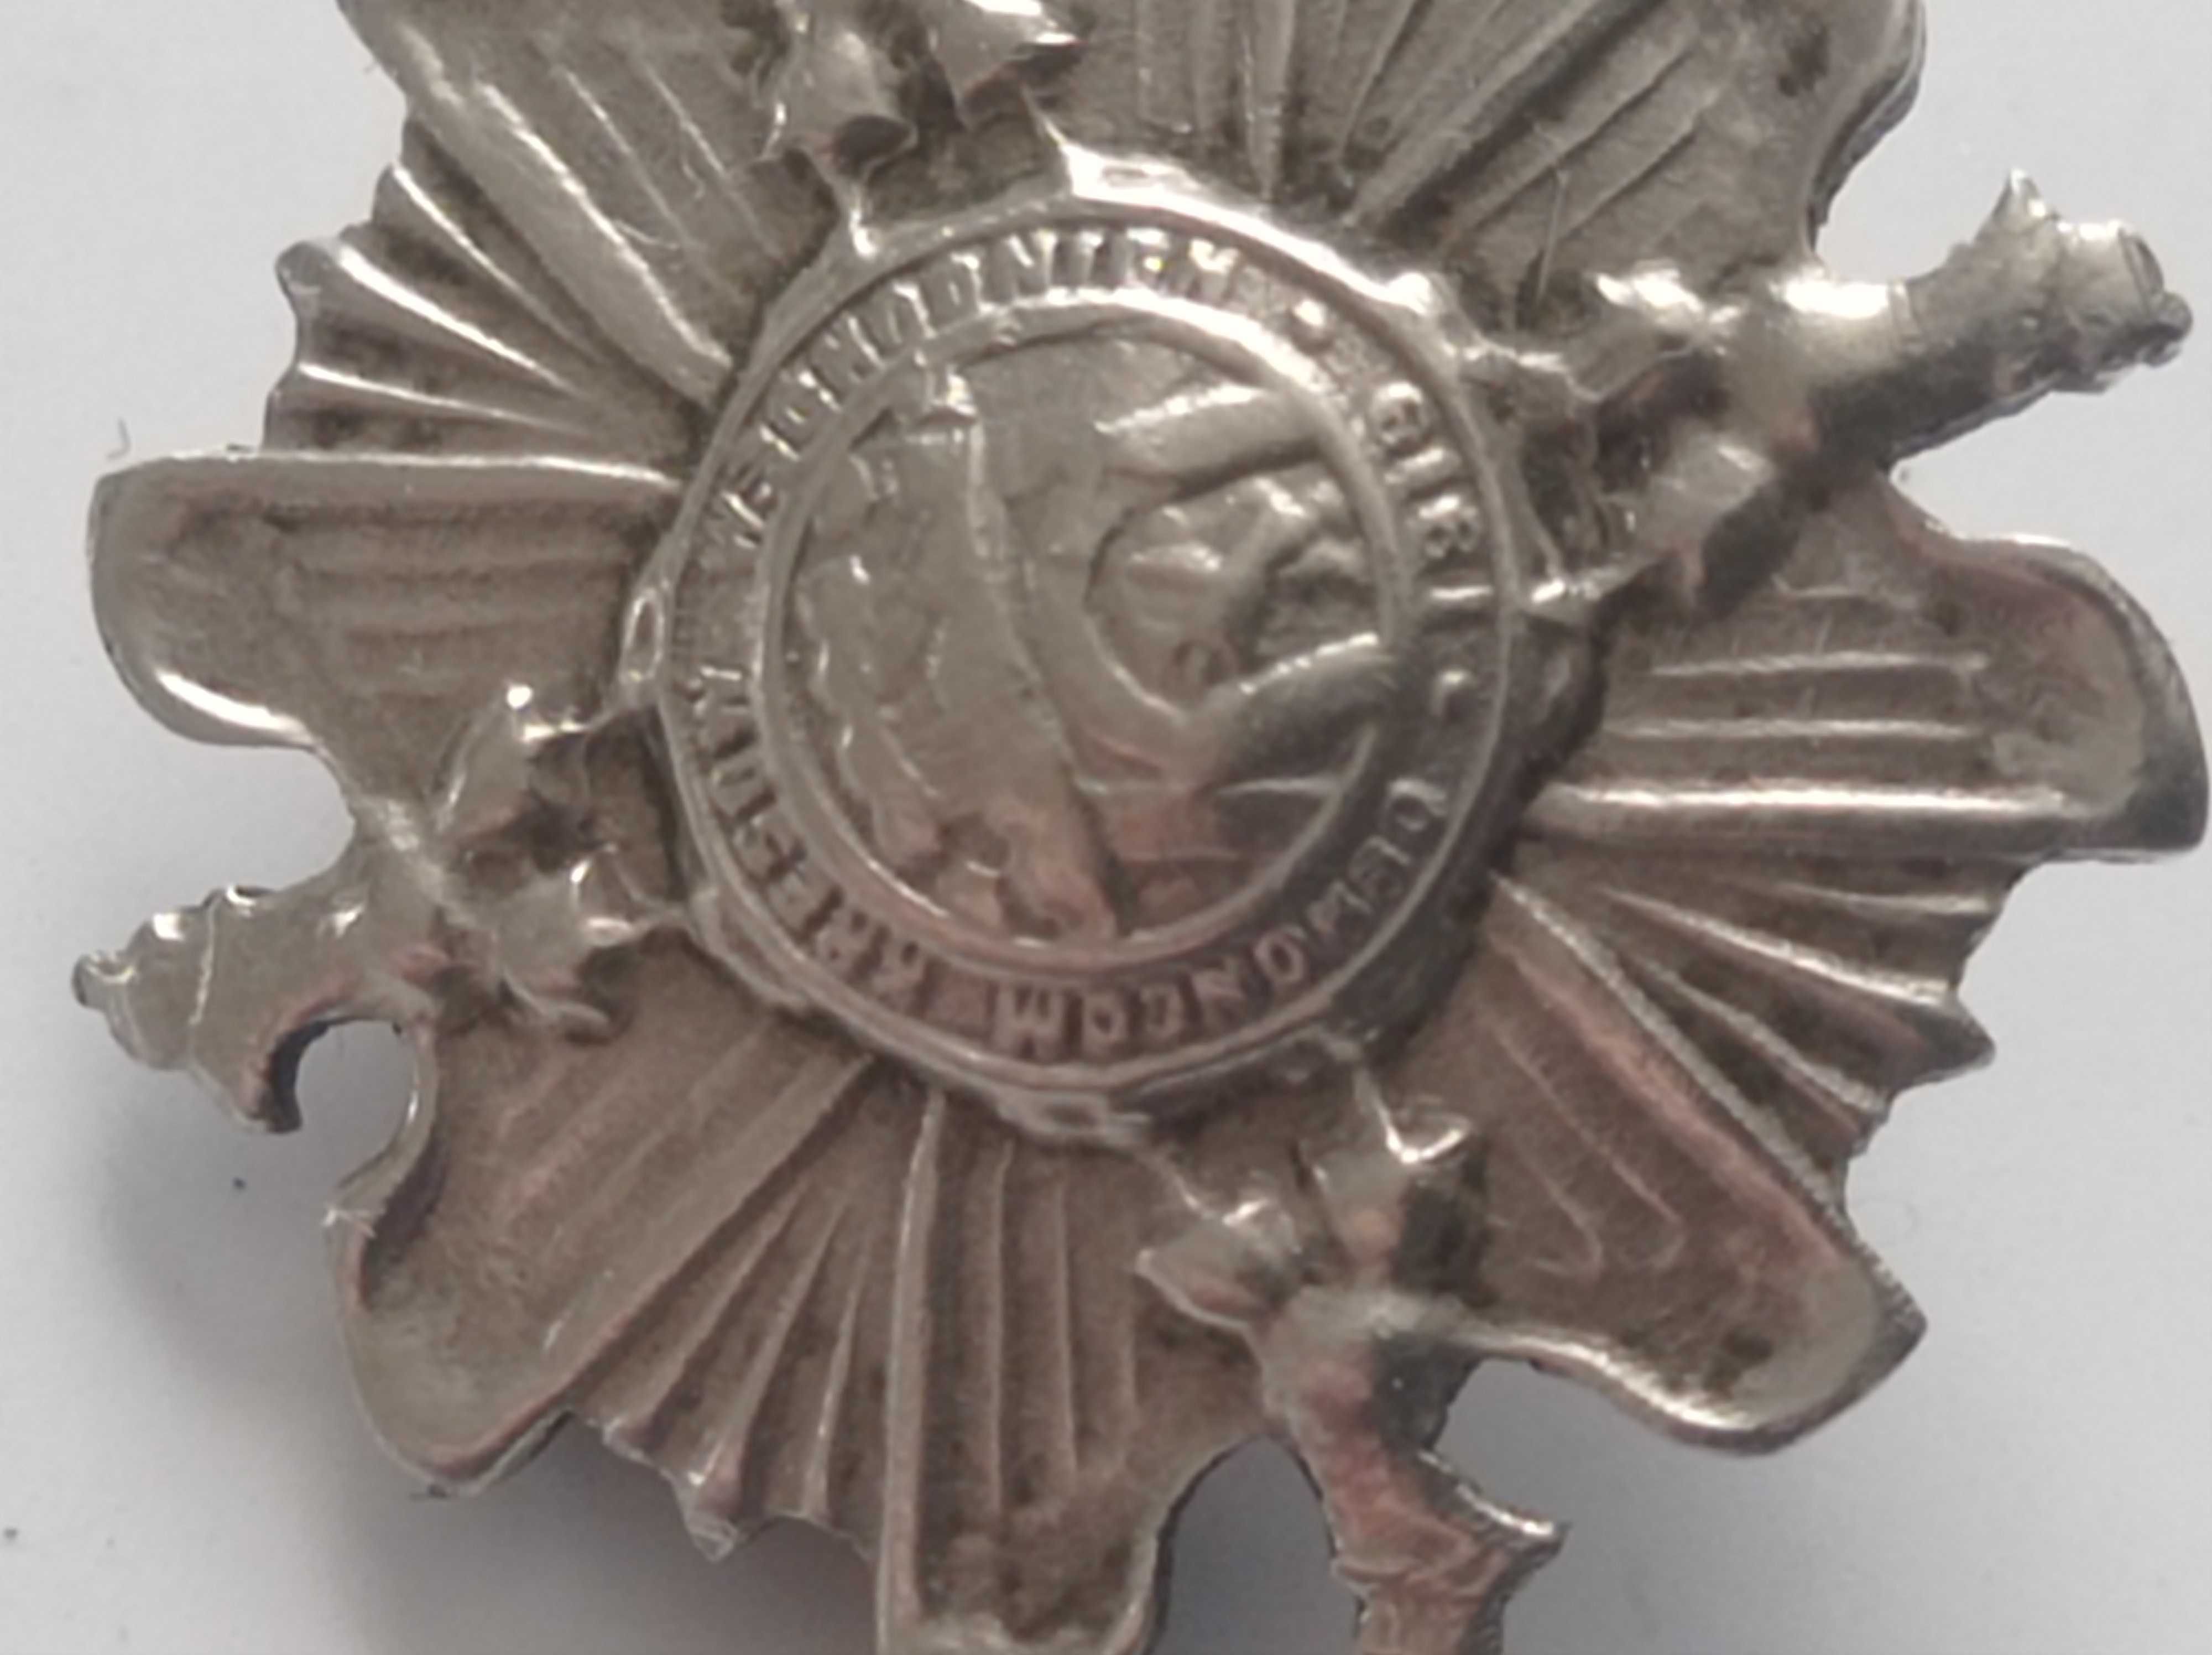 Obrońcom kresów wschodnich - Lwów 1919 - odznaka wojskowa.